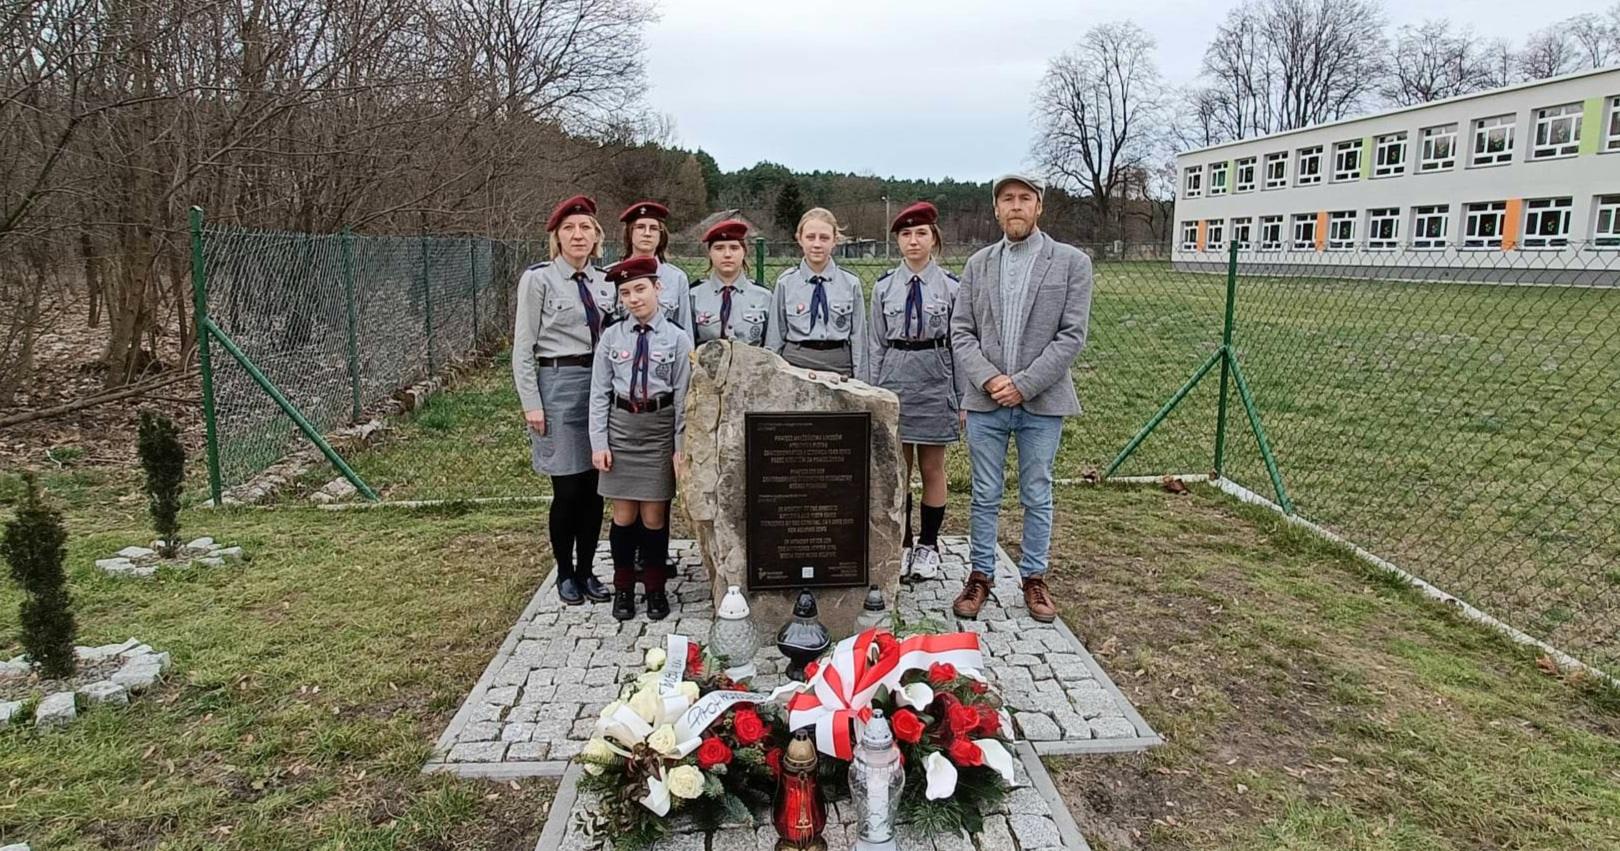 Patrol harcerek przy pominiku z tablicą umpamiętniającą Polaków ratujących Żydów pod okupacją niemiecką - miejsce pamięci w Opoce Dużej